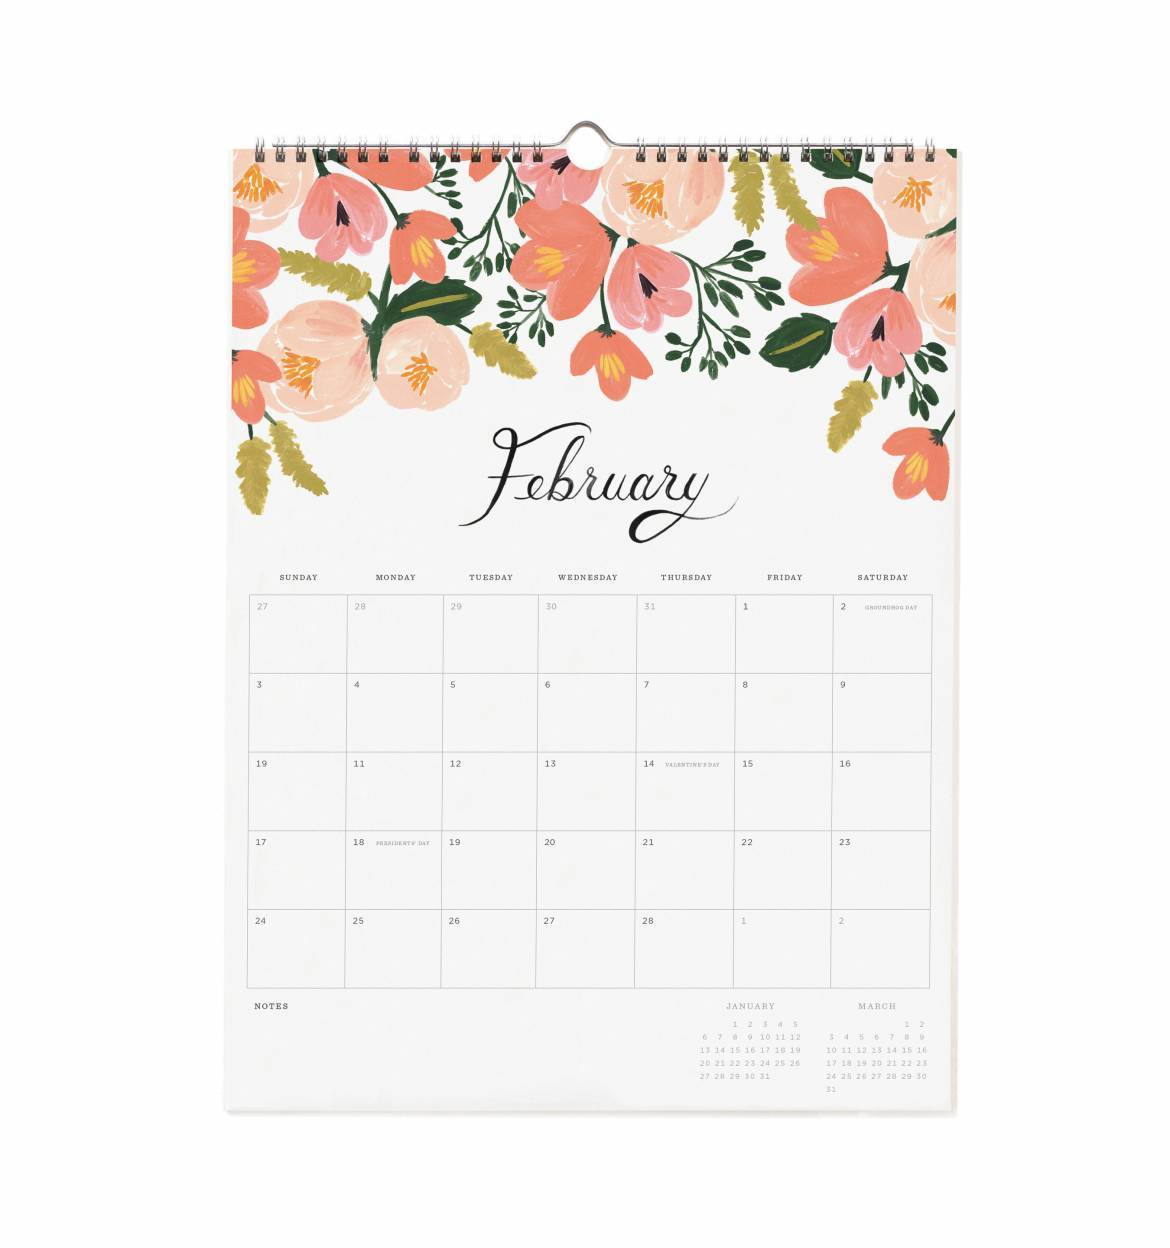 Wall Calendar 2019 - Bouquet